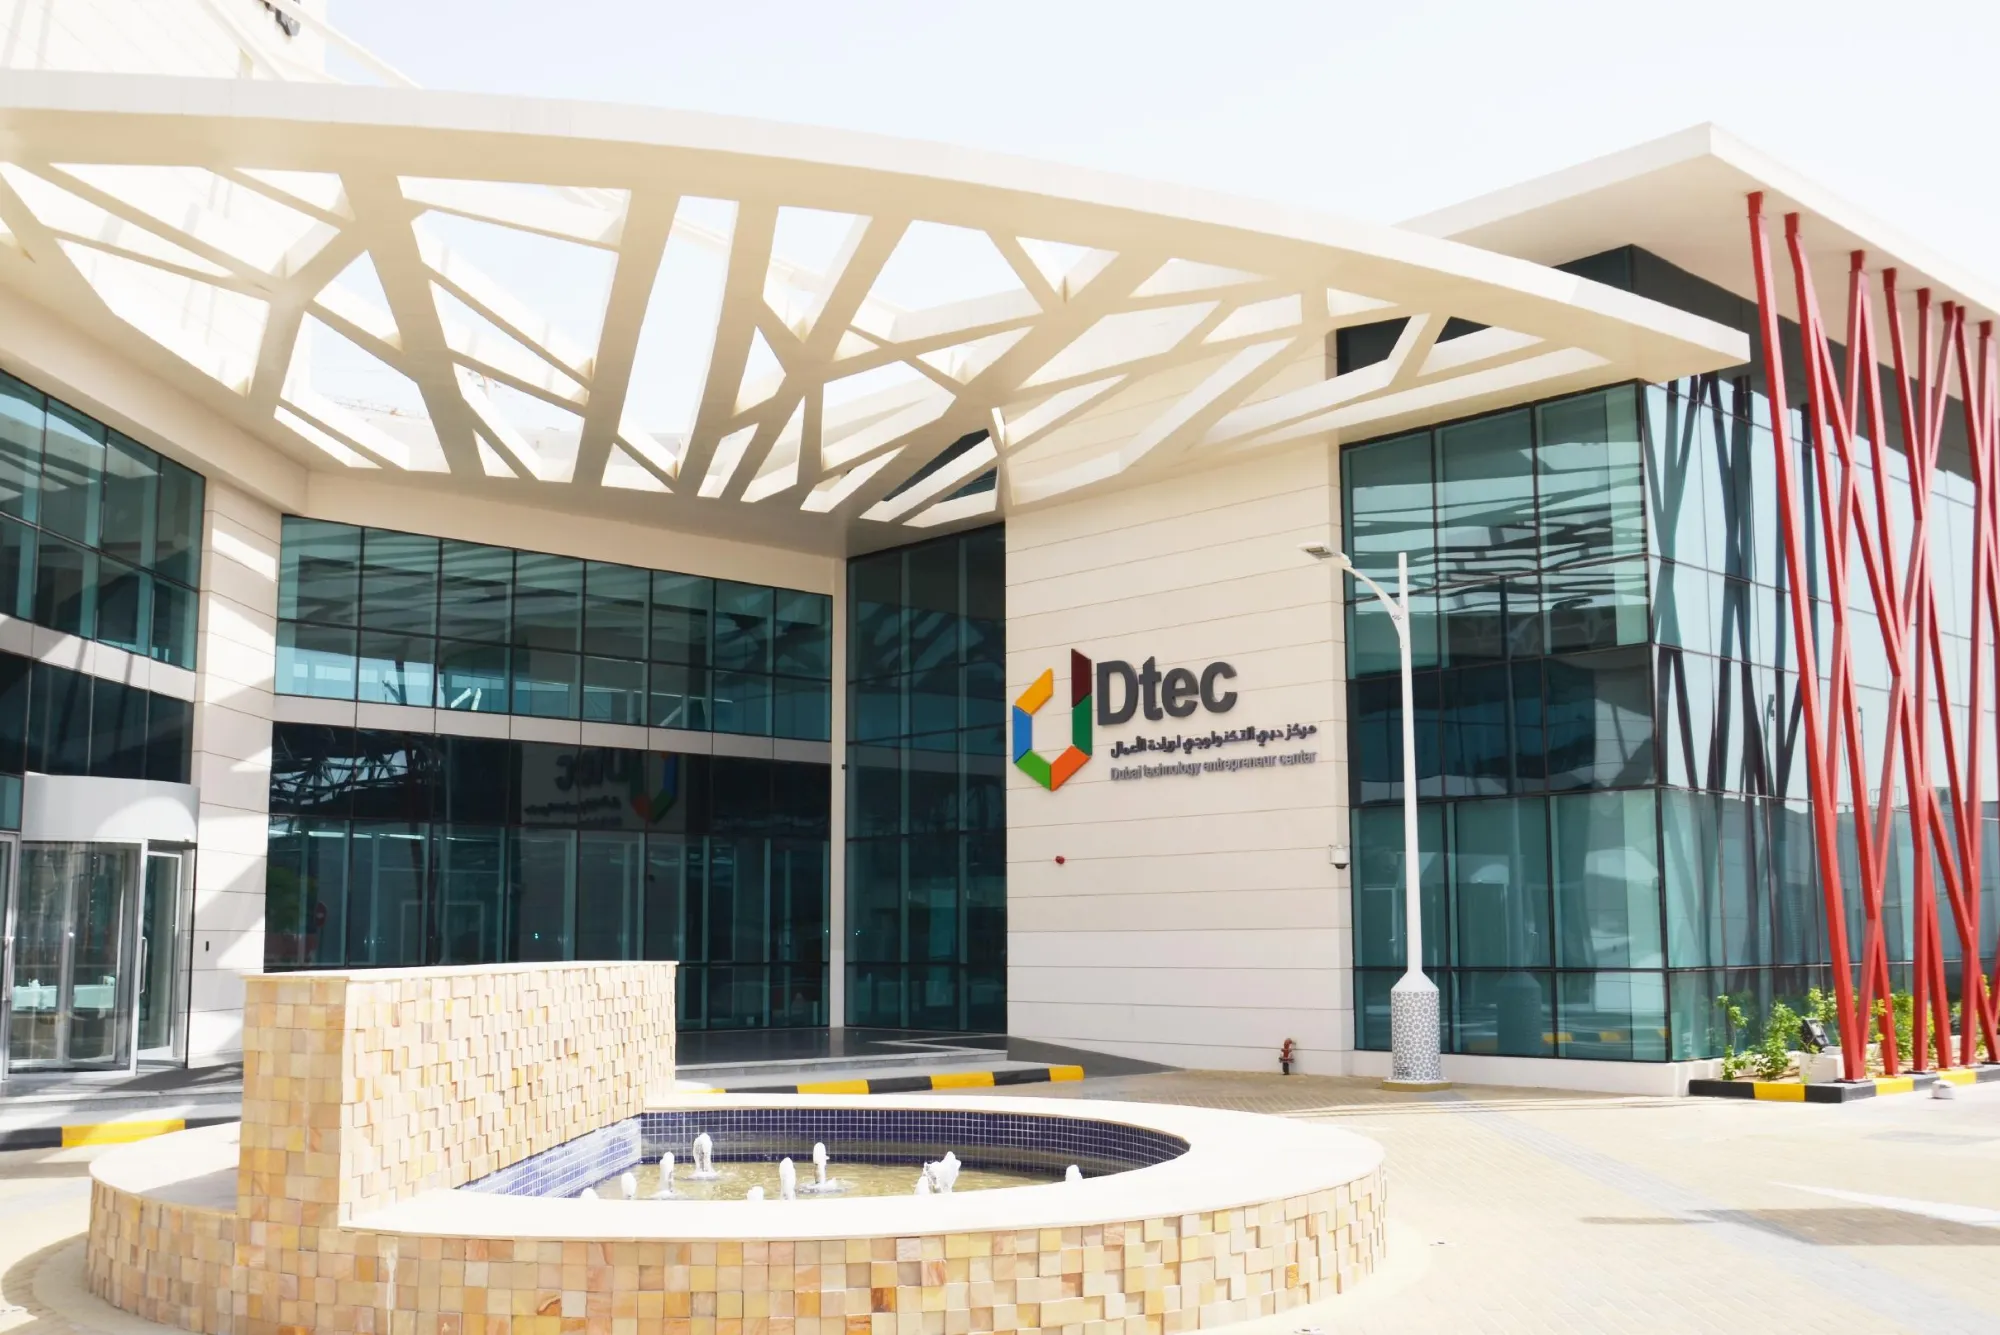 Dubai Technology Entrepreneur Campus DTEC